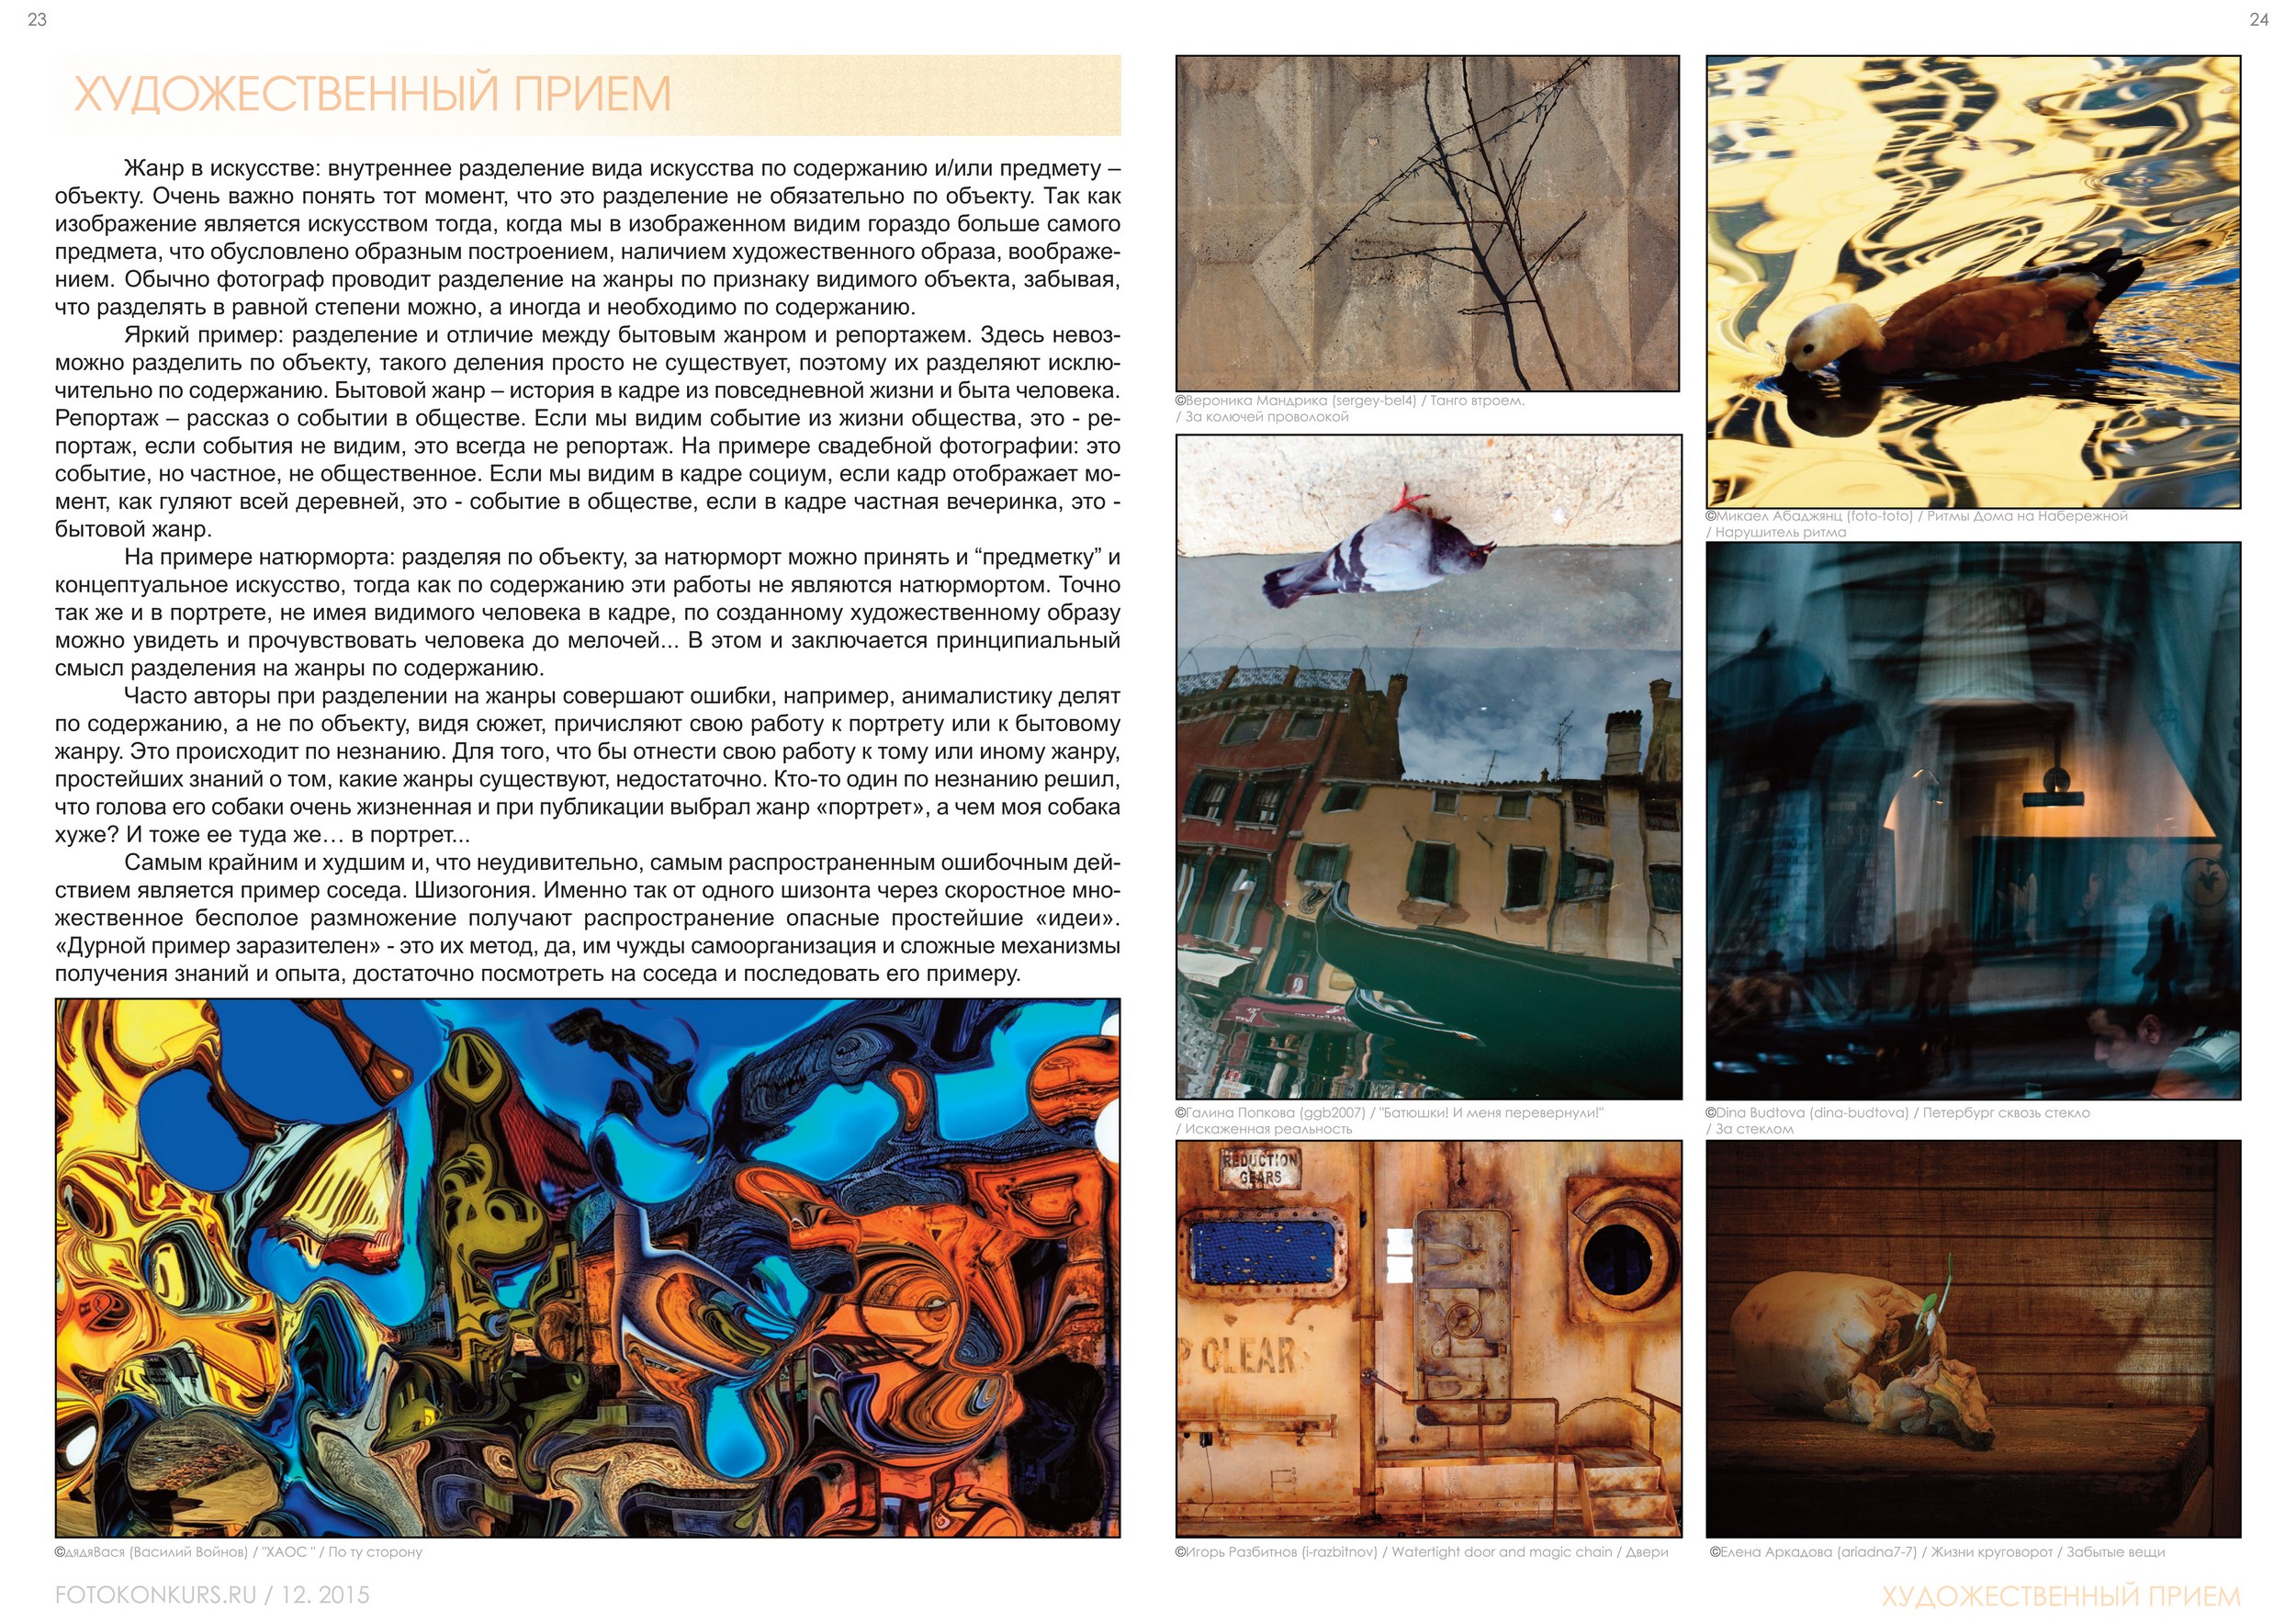 Журнал Фотоконкурс.ру, Выпуск 2, декабрь-2015, страница 23-24